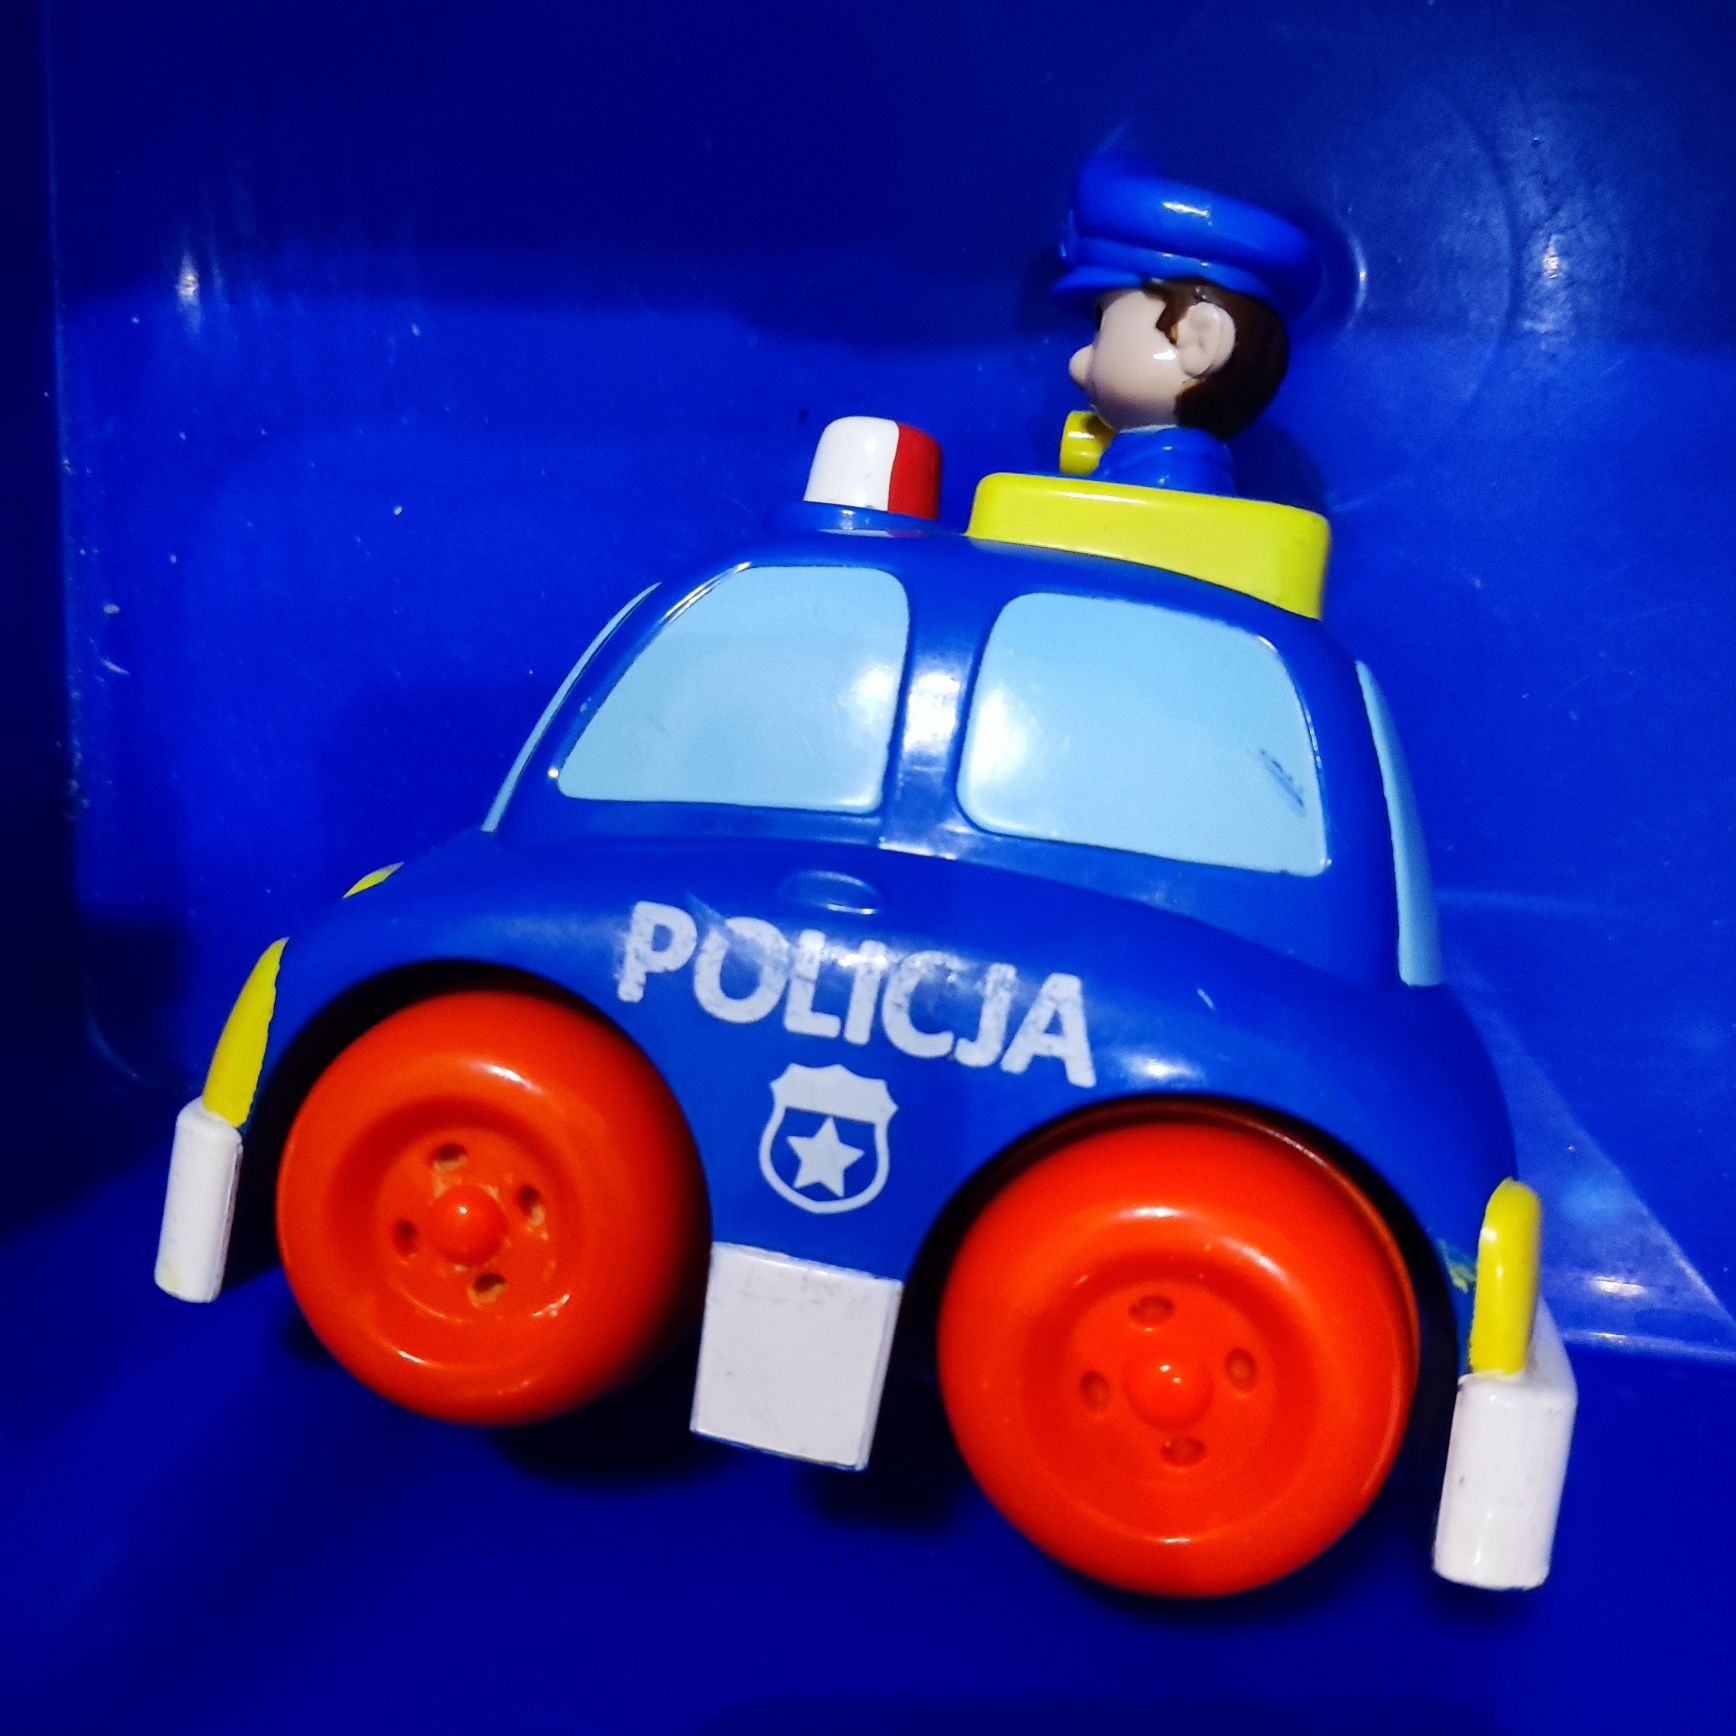 Samochód policyjny jeżdżący po naciśnięciu głowy policjanta